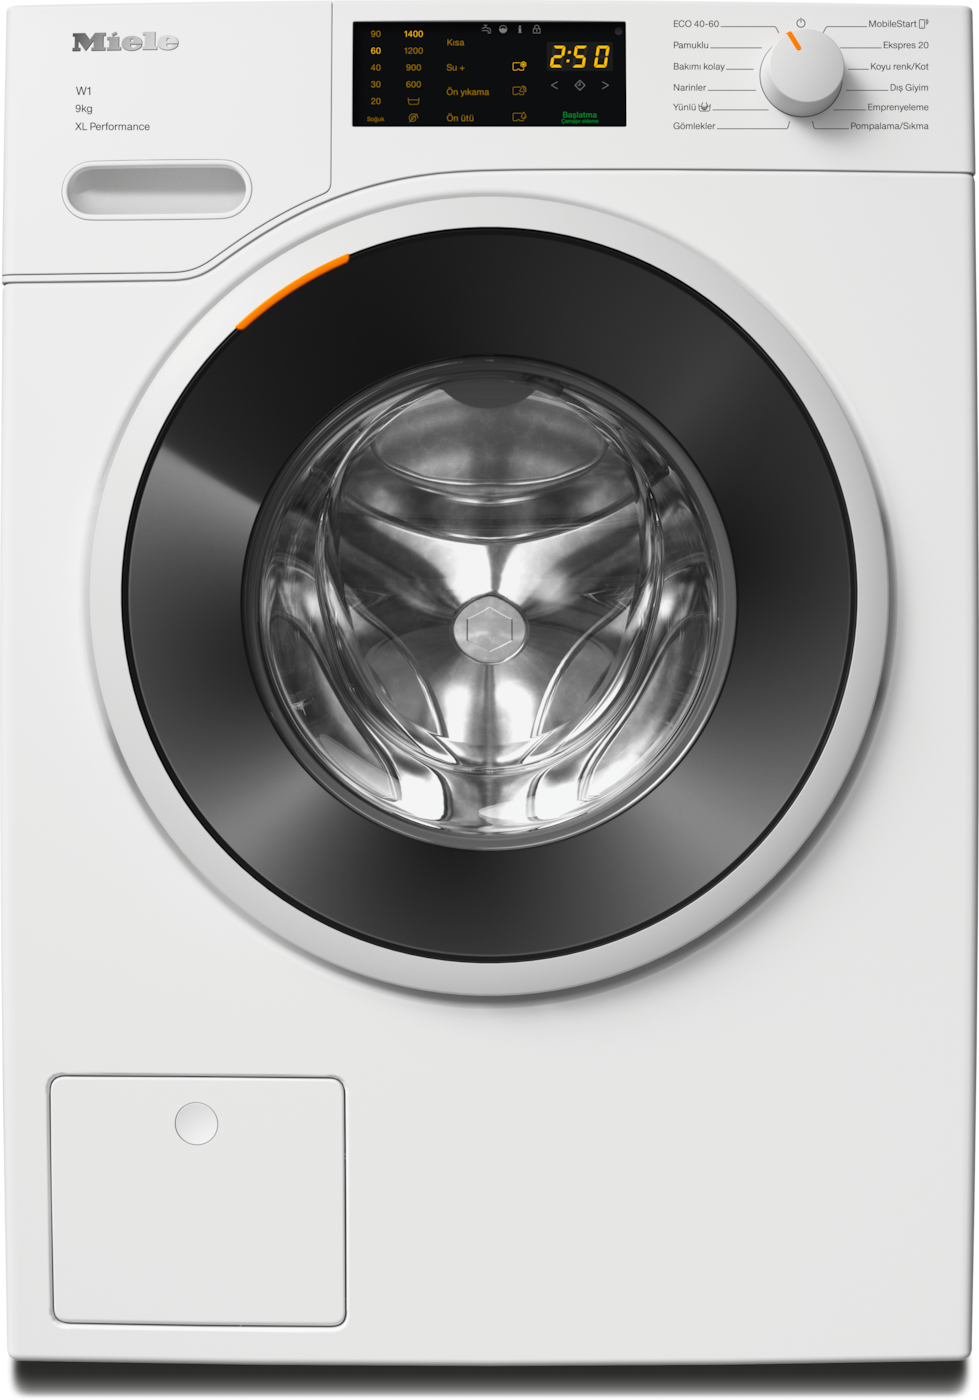 WWD164 WCS 9kg - Önden yüklemeli W1 çamaşır makinesi: 